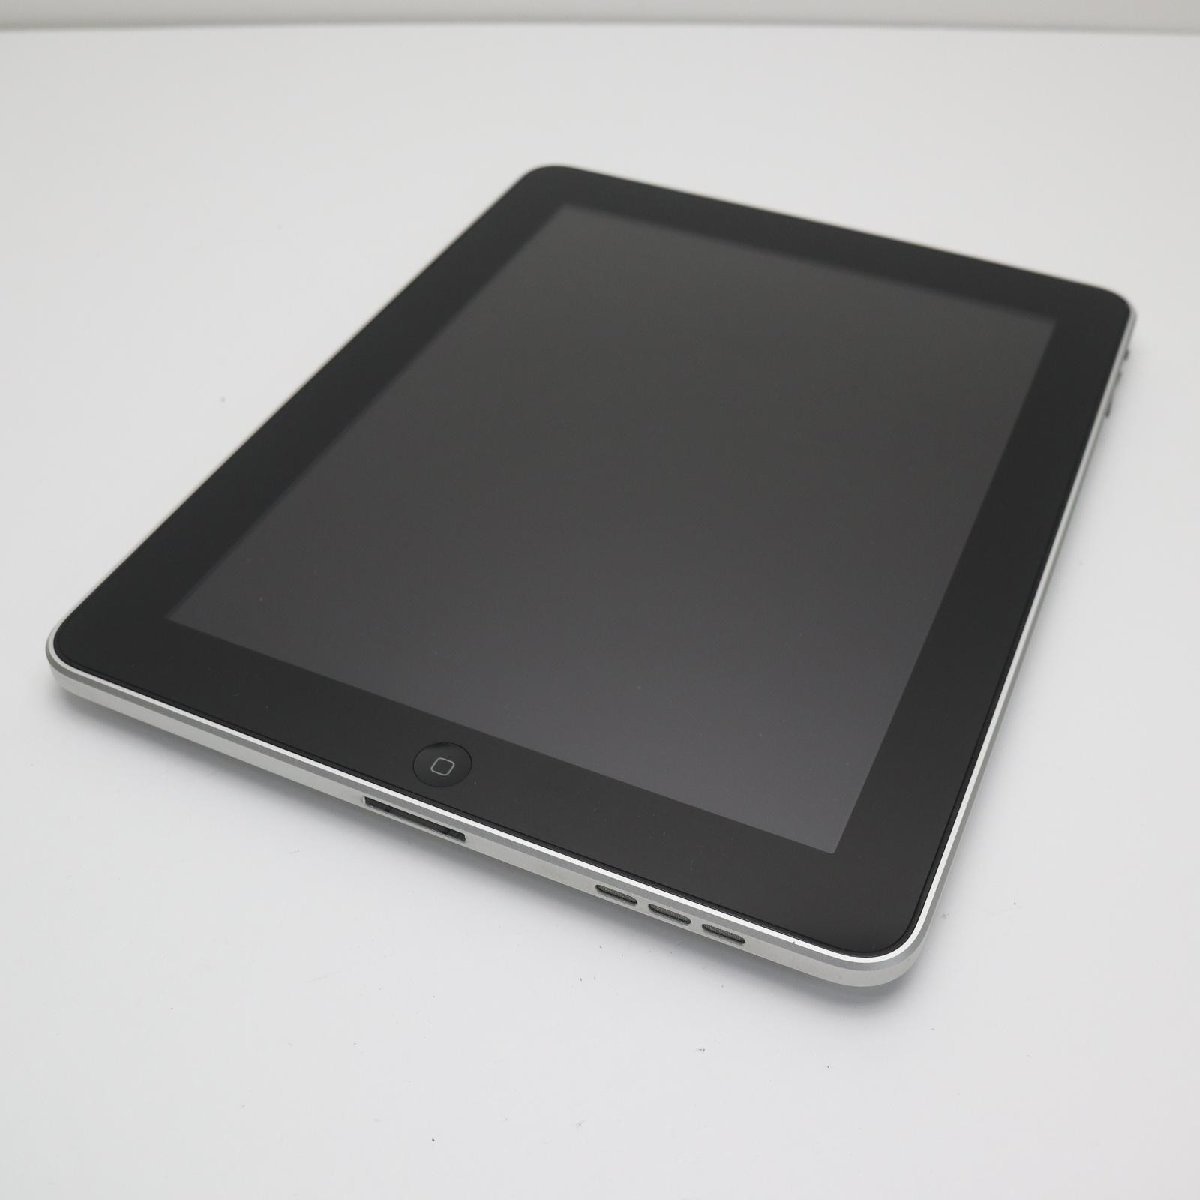 公式の店舗 即日発送 ブラック 64GB Wi-Fi iPad 超美品 タブレット